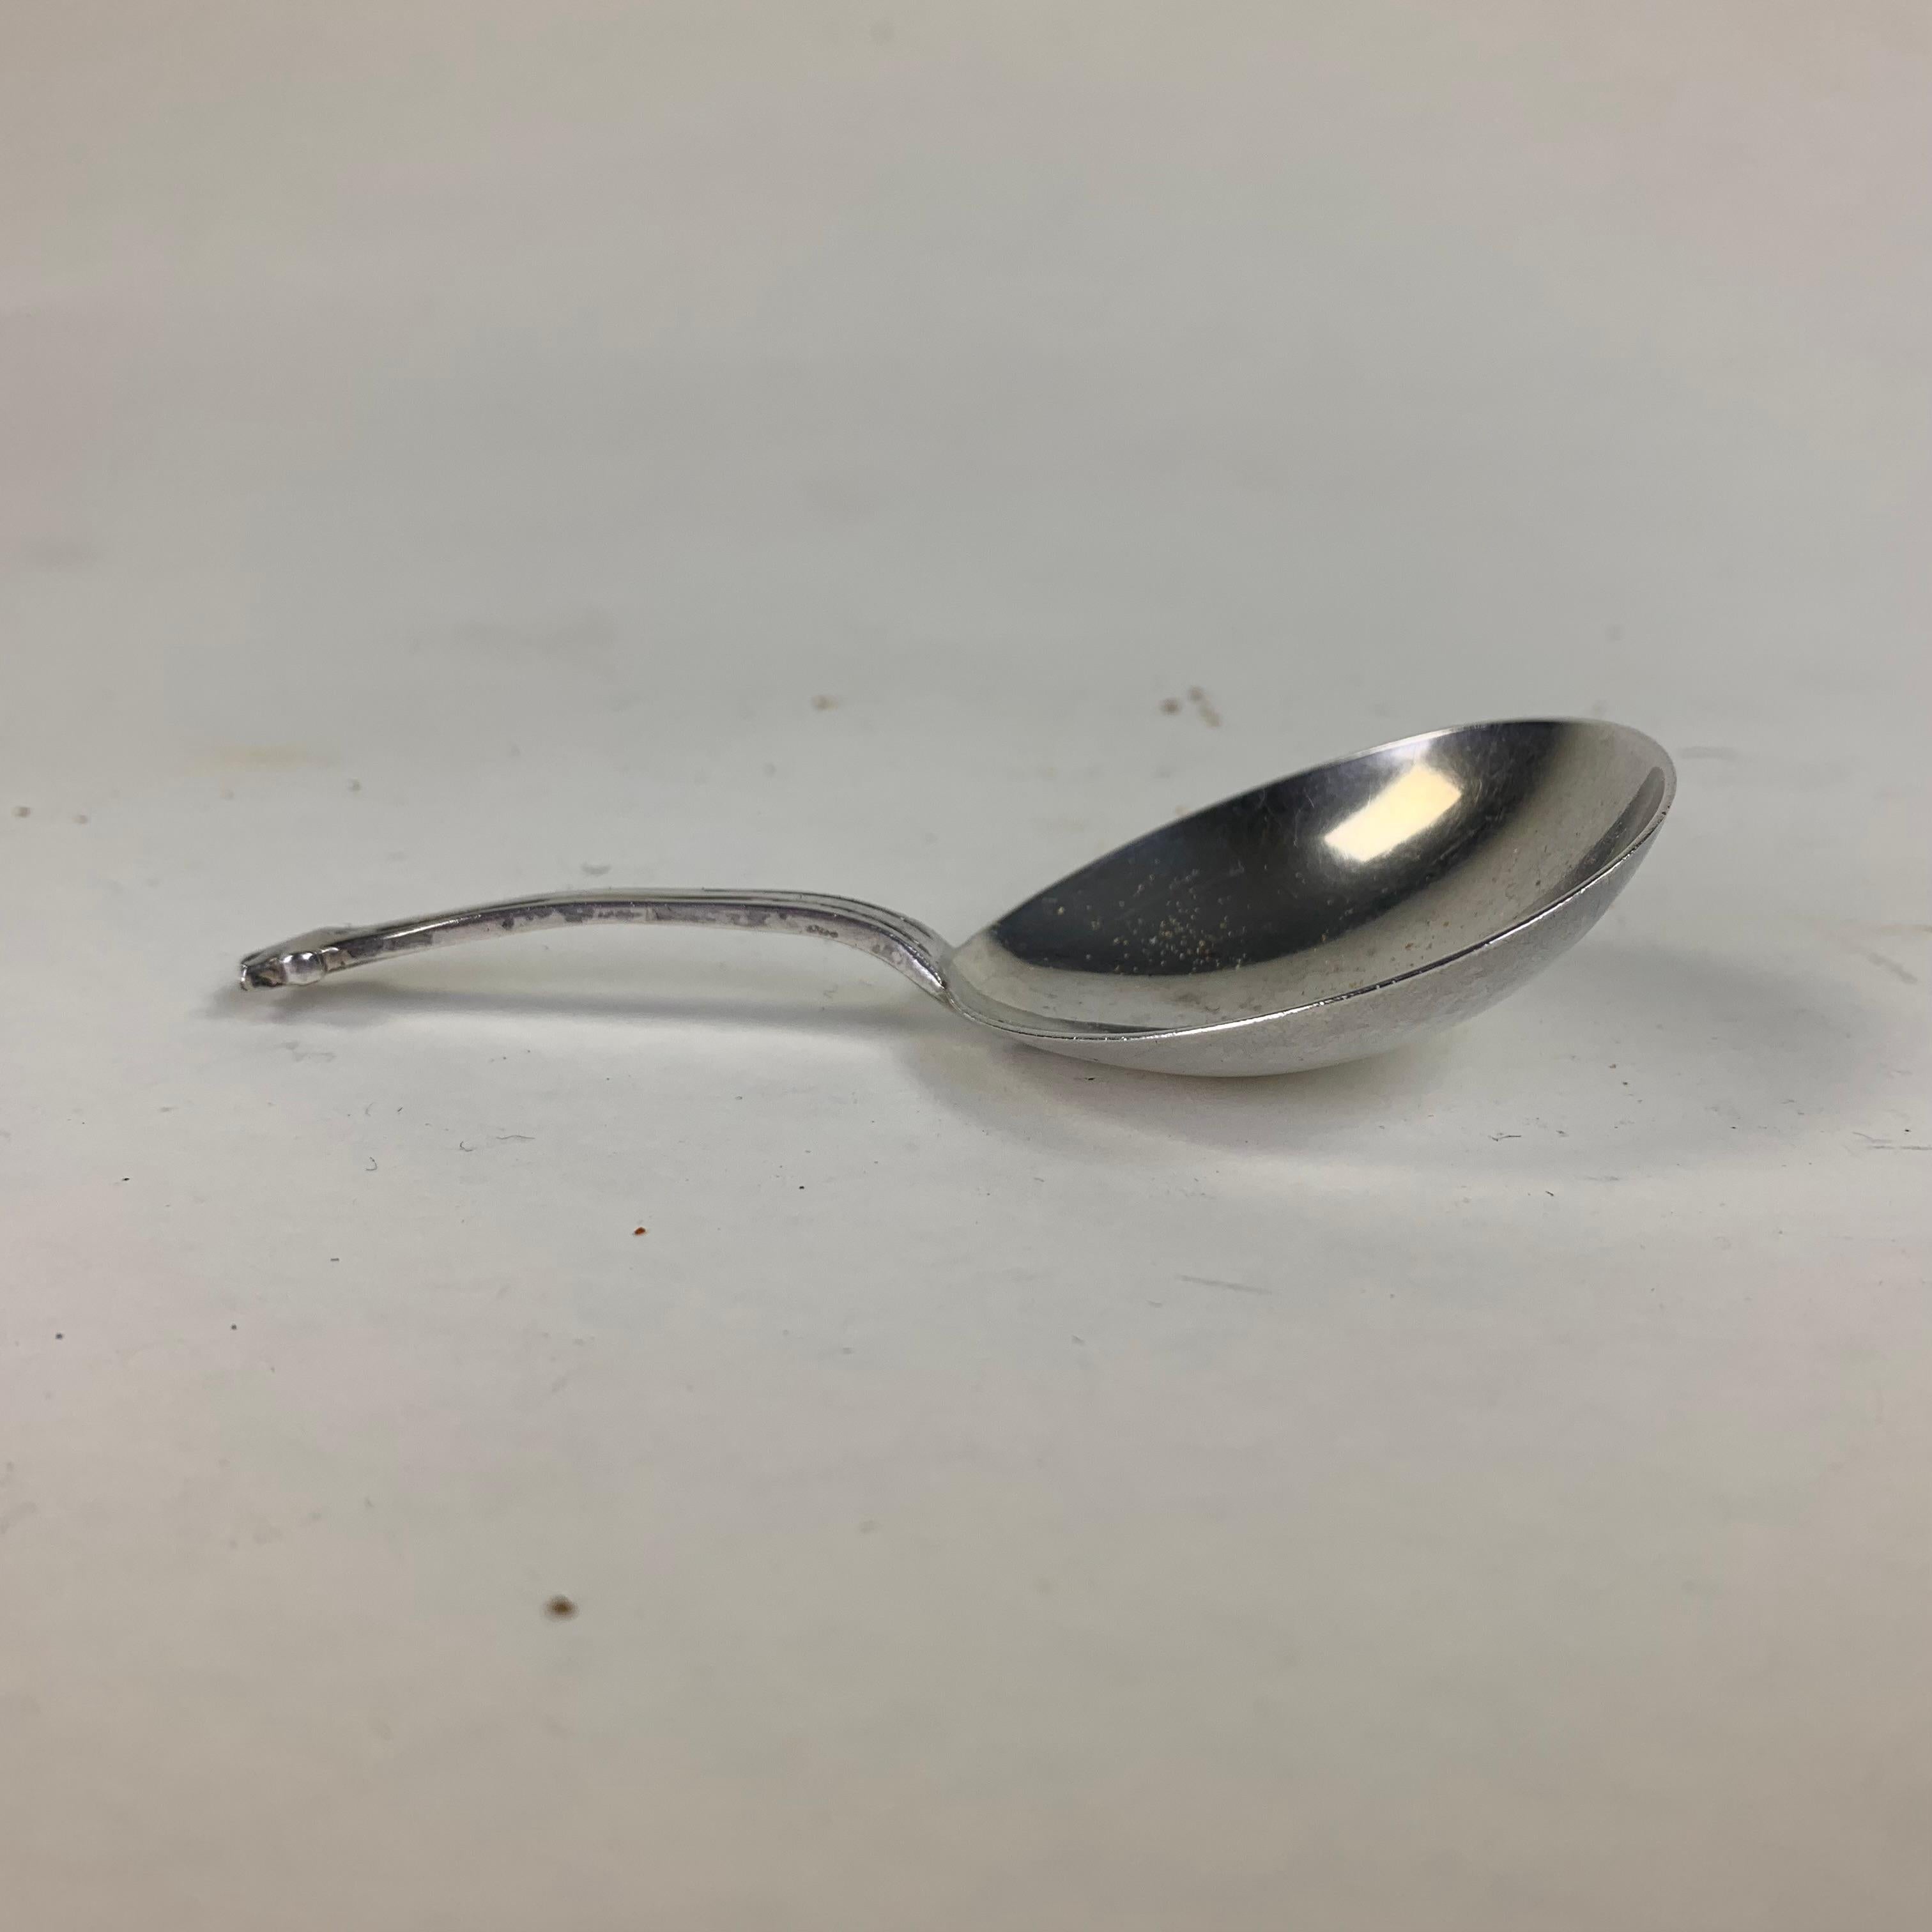 Silver tea caddy spoon by James Deakin & Son, Sheffield, 1895. 30 grams.